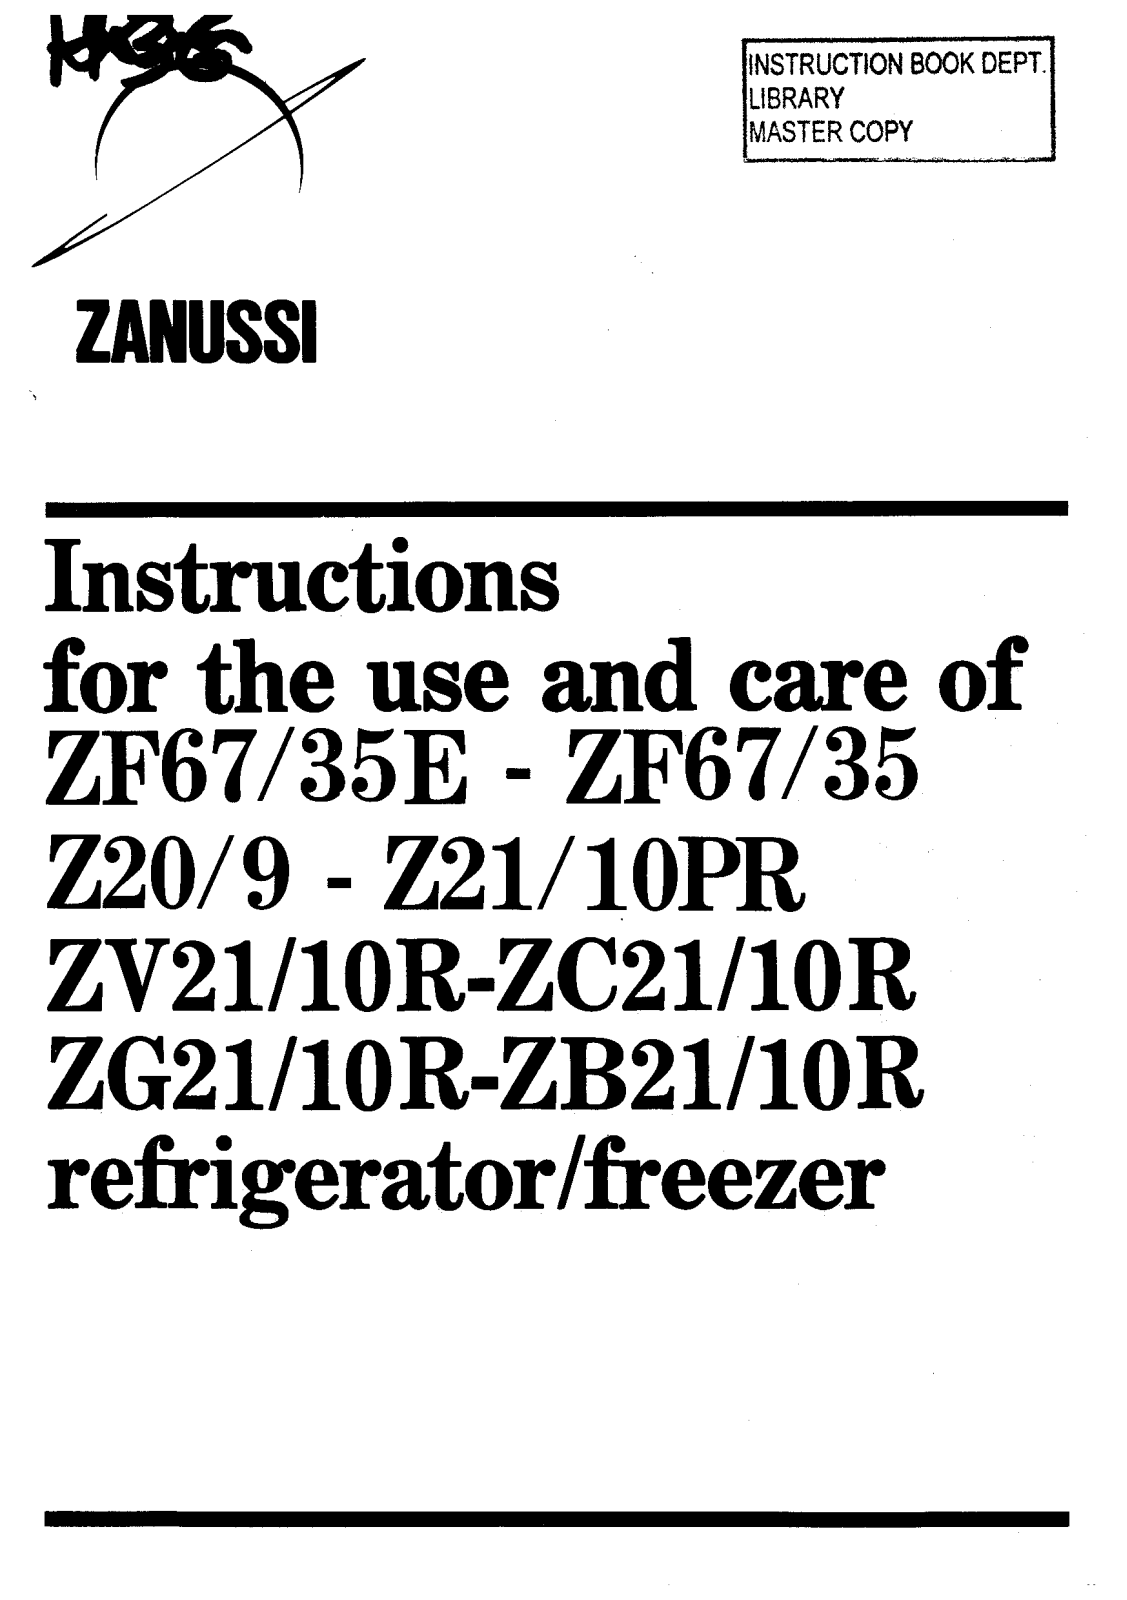 Zanussi ZF67/35, ZF67/35E, ZC21/10R User Manual